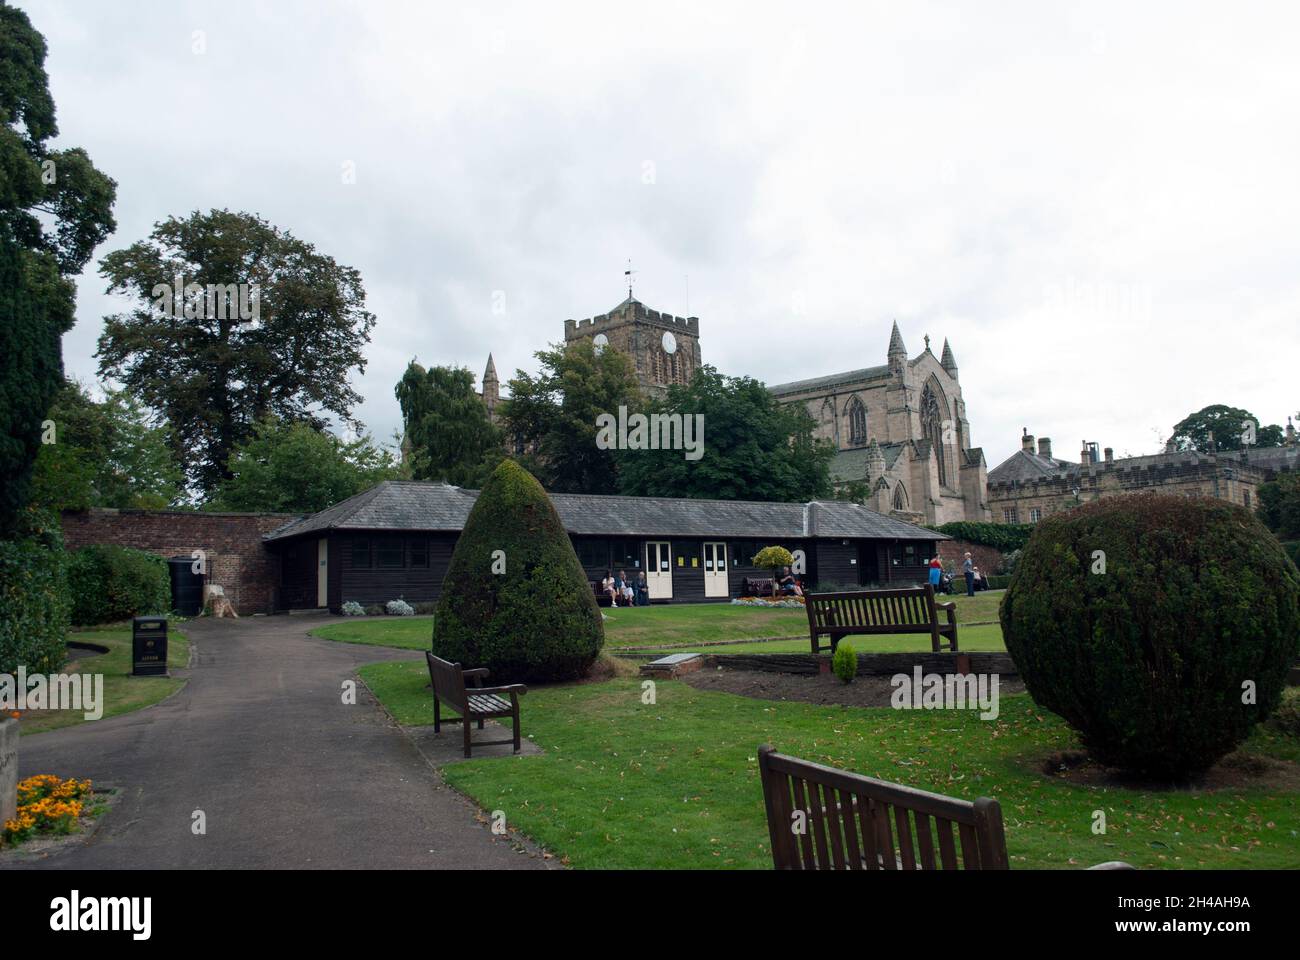 Hexham Abbey, from Hexham Abbey Bowls Club, Hexham, Northumberland, England, UK Stock Photo